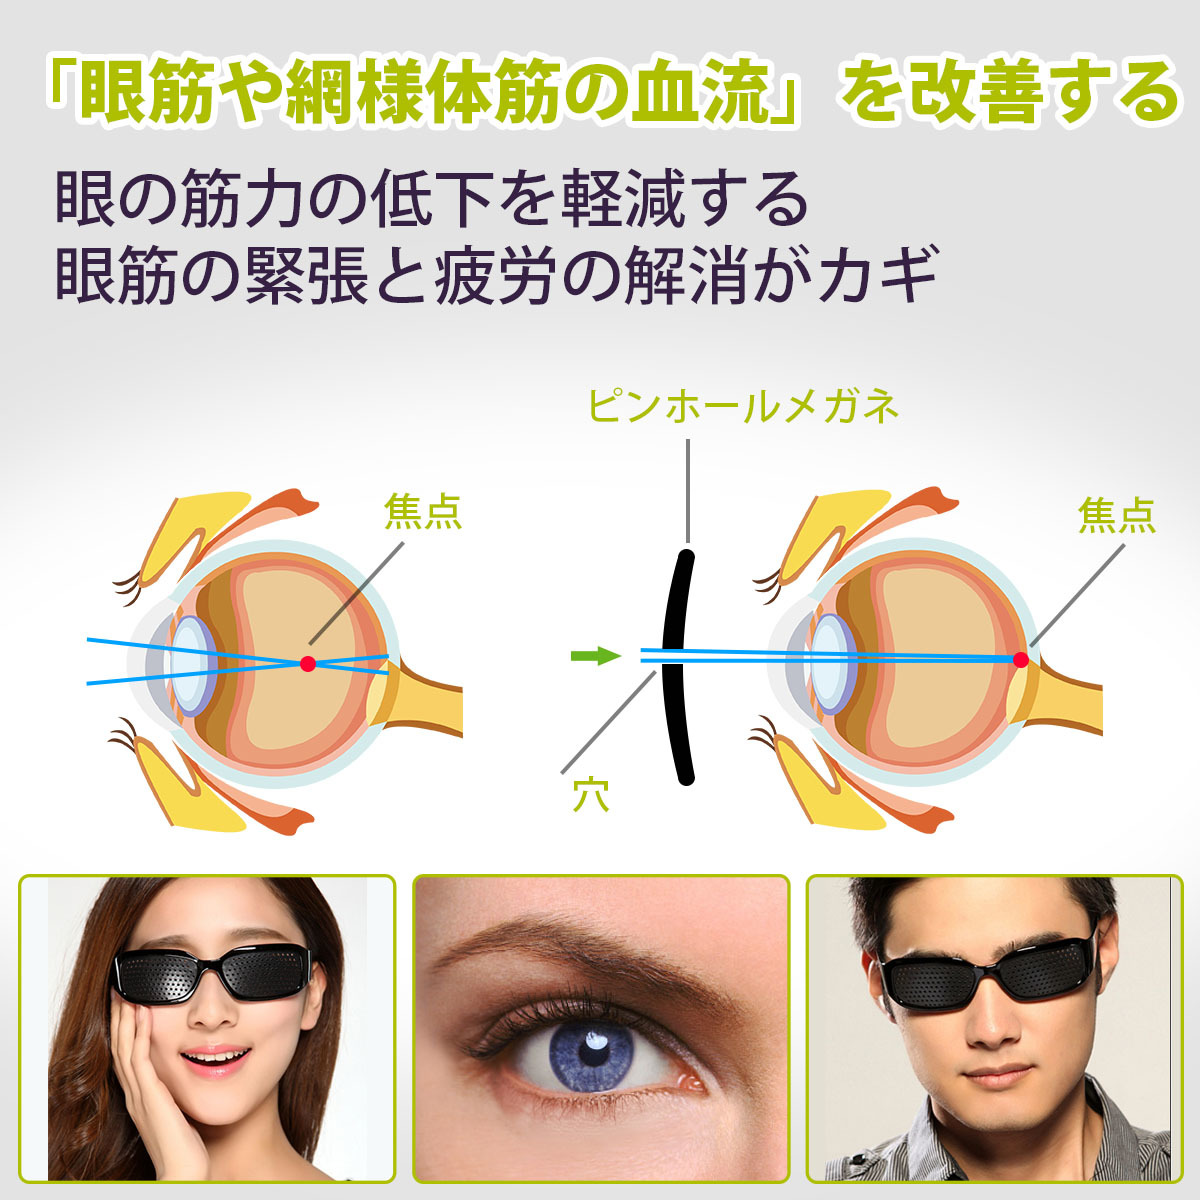 楽天市場 ピンホールメガネ 21 視力回復 視力トレーニング 眼筋運動に 遠近兼用 疲労予防 近視 遠視 老眼 乱視の改善 疲れ目 フリーサイズ 眼筋力 アップ あす楽対応 Wish Sun